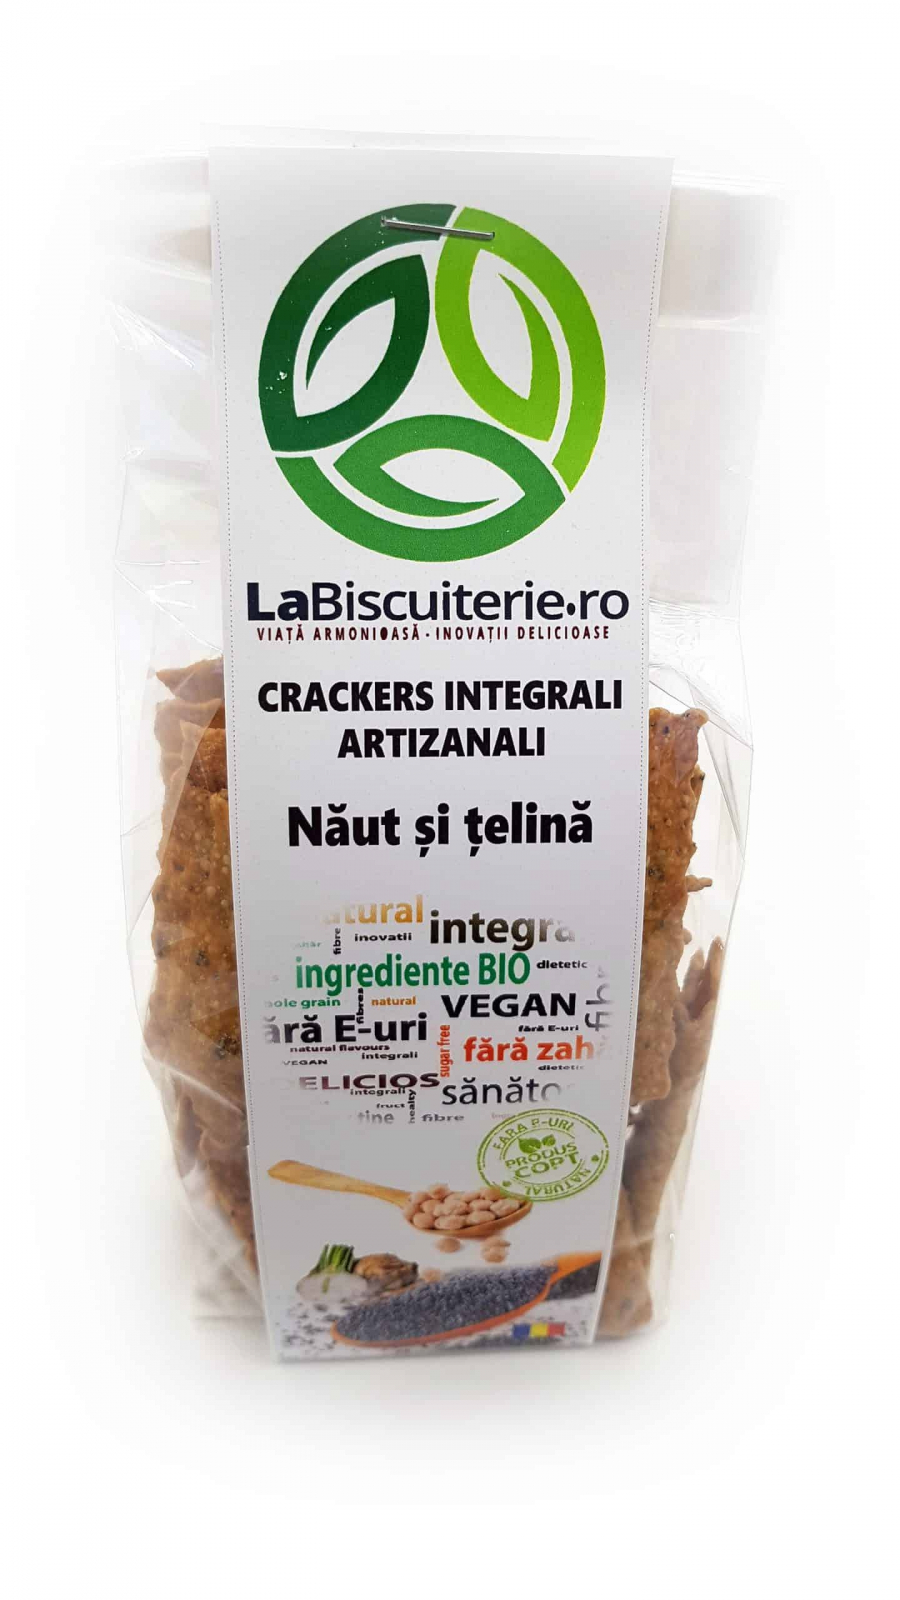 Crackers - Integrali cu naut si telina | La Biscuiterie